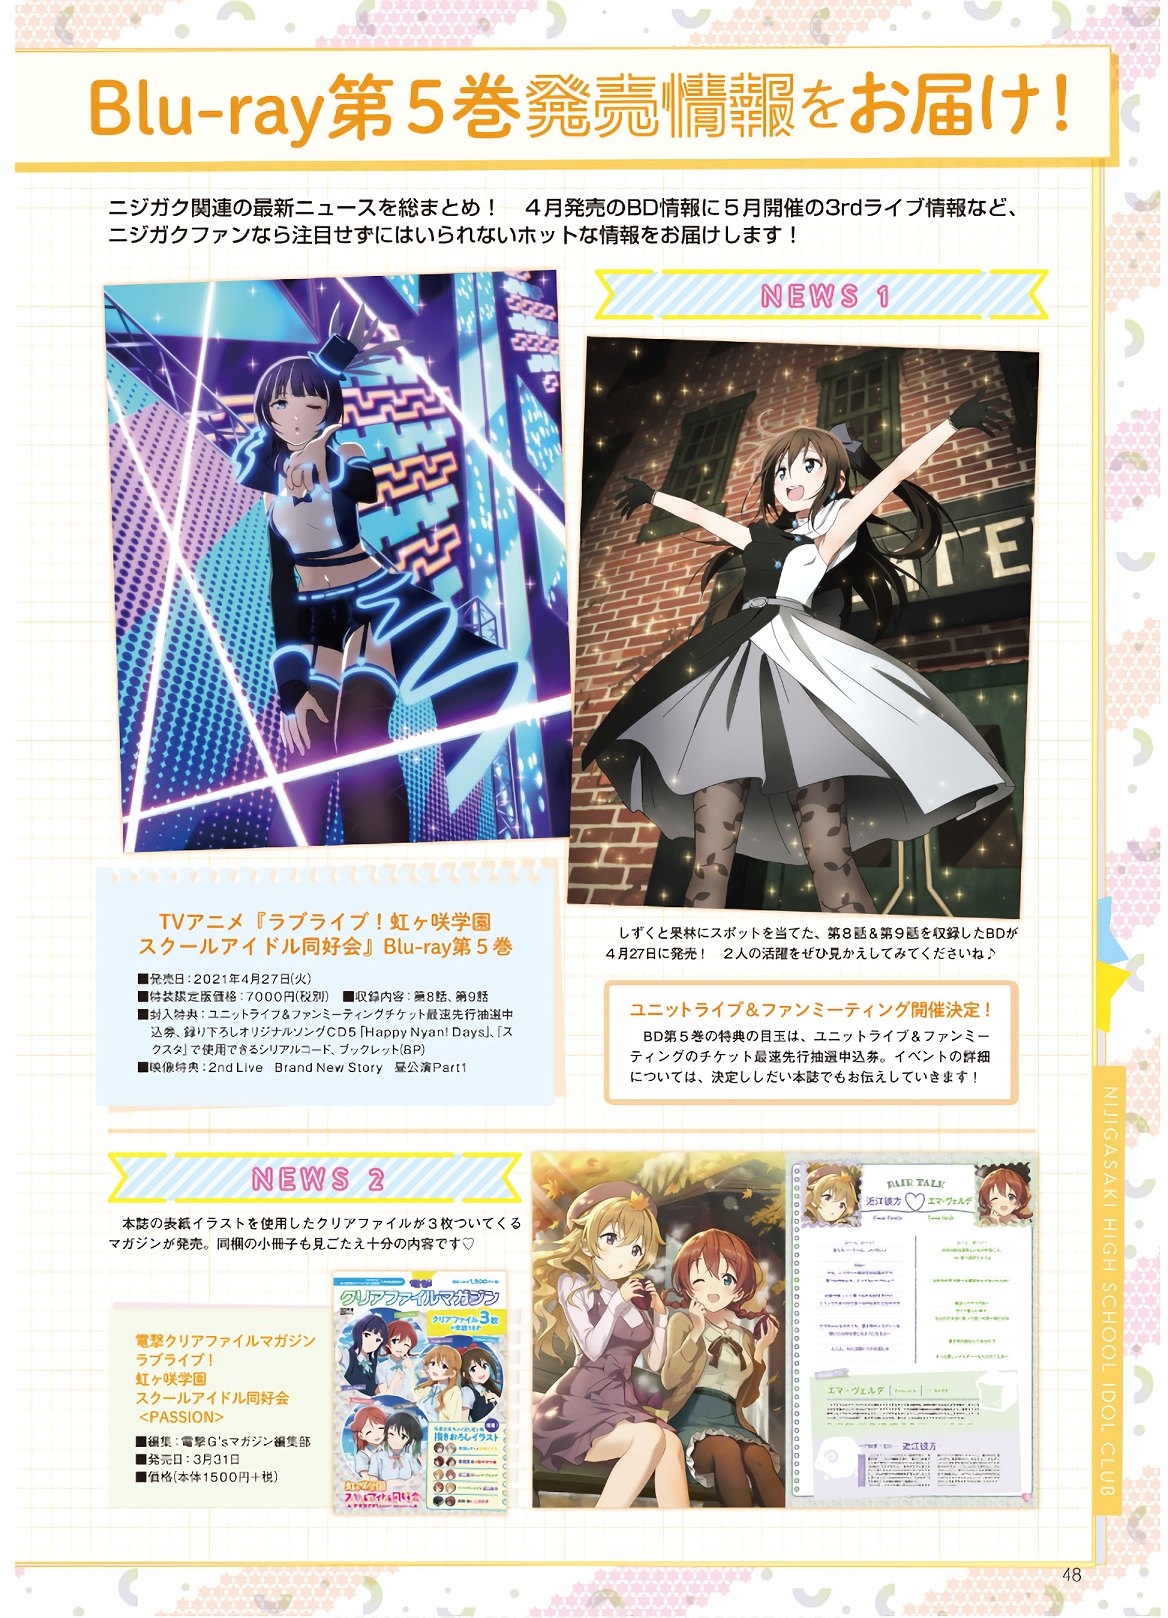 Dengeki G's Magazine #286 - May 2021 45